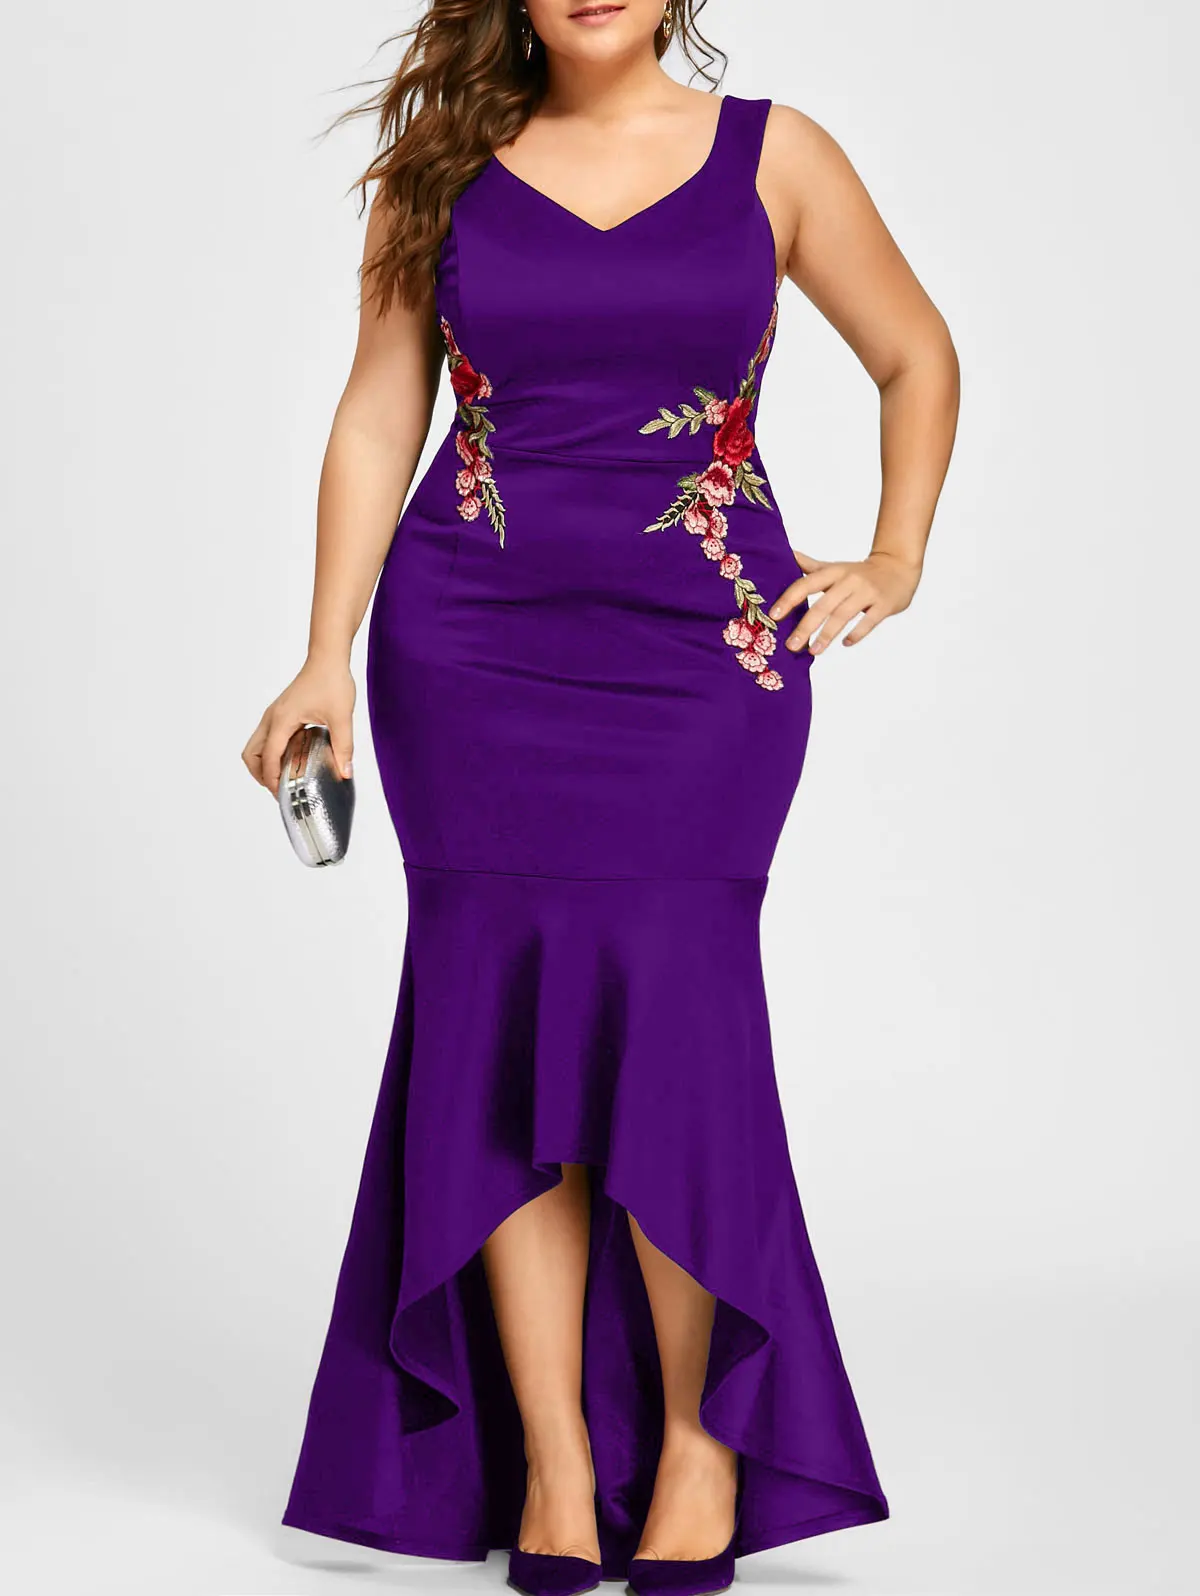 Wipalo вышивка розы Русалка размера плюс 5XL платье Макси сексуальное черное платье с v-образным вырезом длинные элегантные вечерние женские платья вечерняя одежда - Цвет: purple